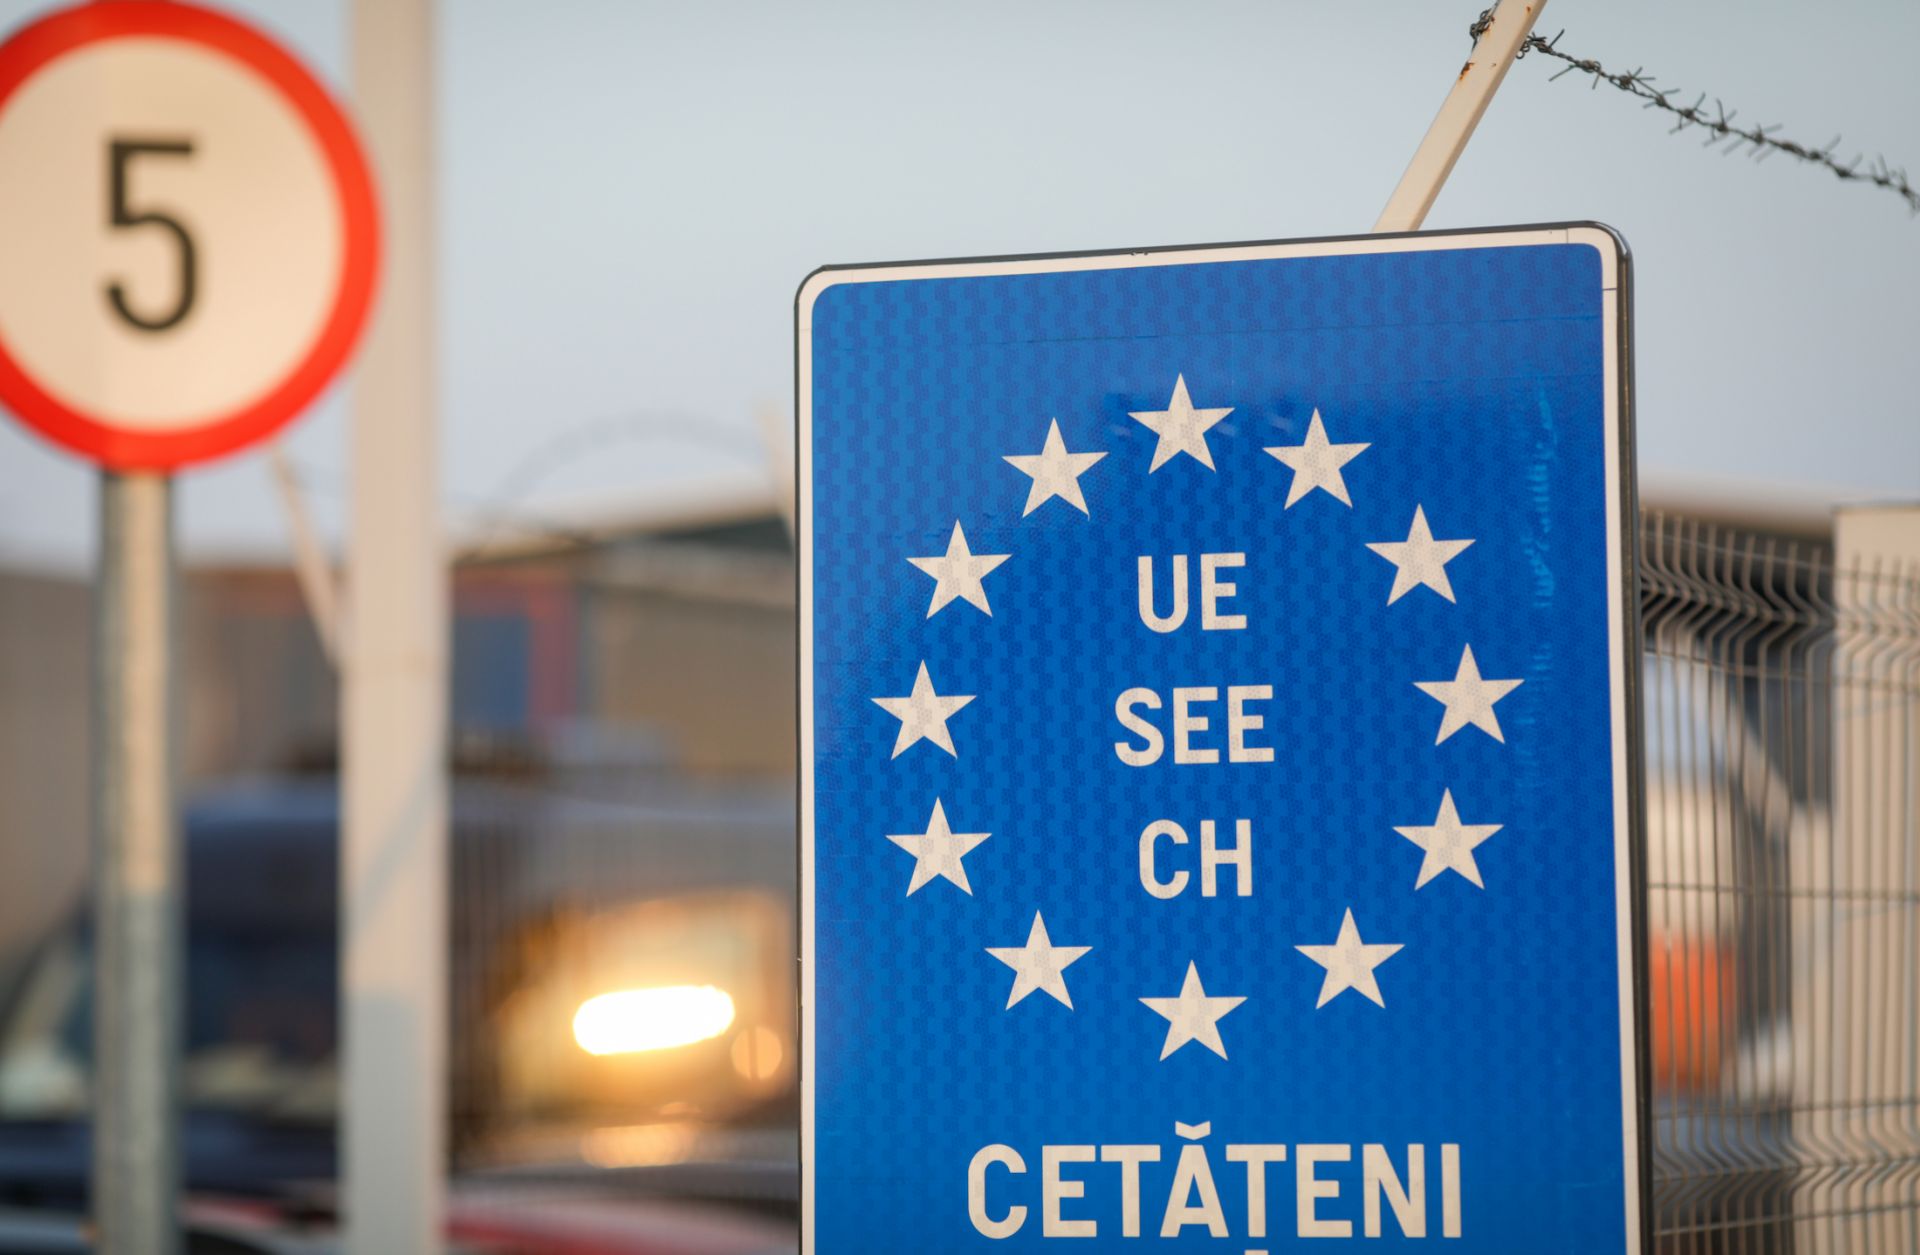 A blue EU sign is seen at a Romanian border crossing.